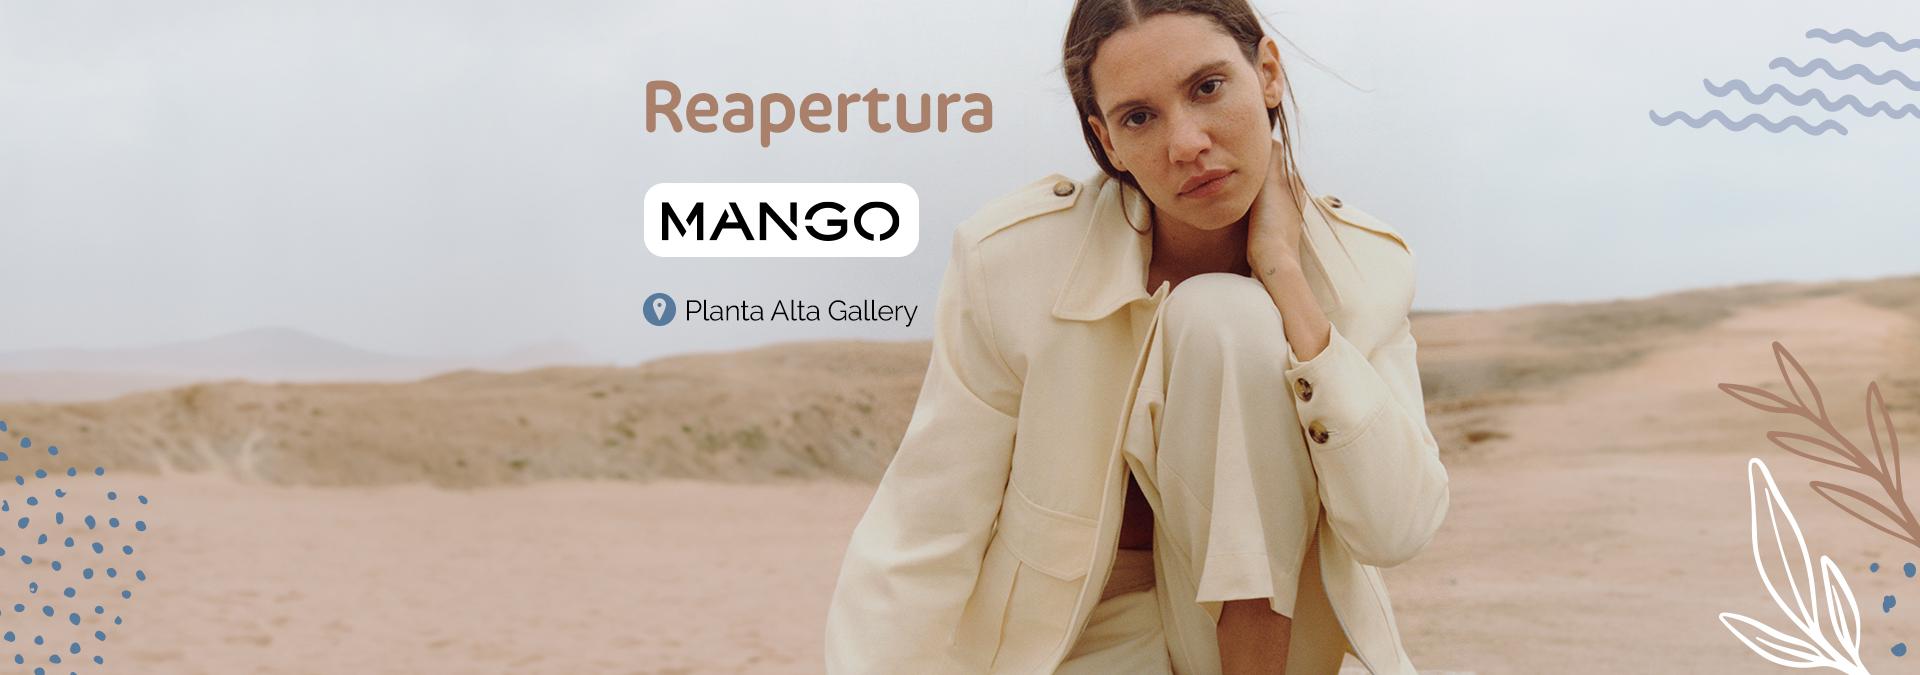 mango-reapertura-frontal_web.jpg